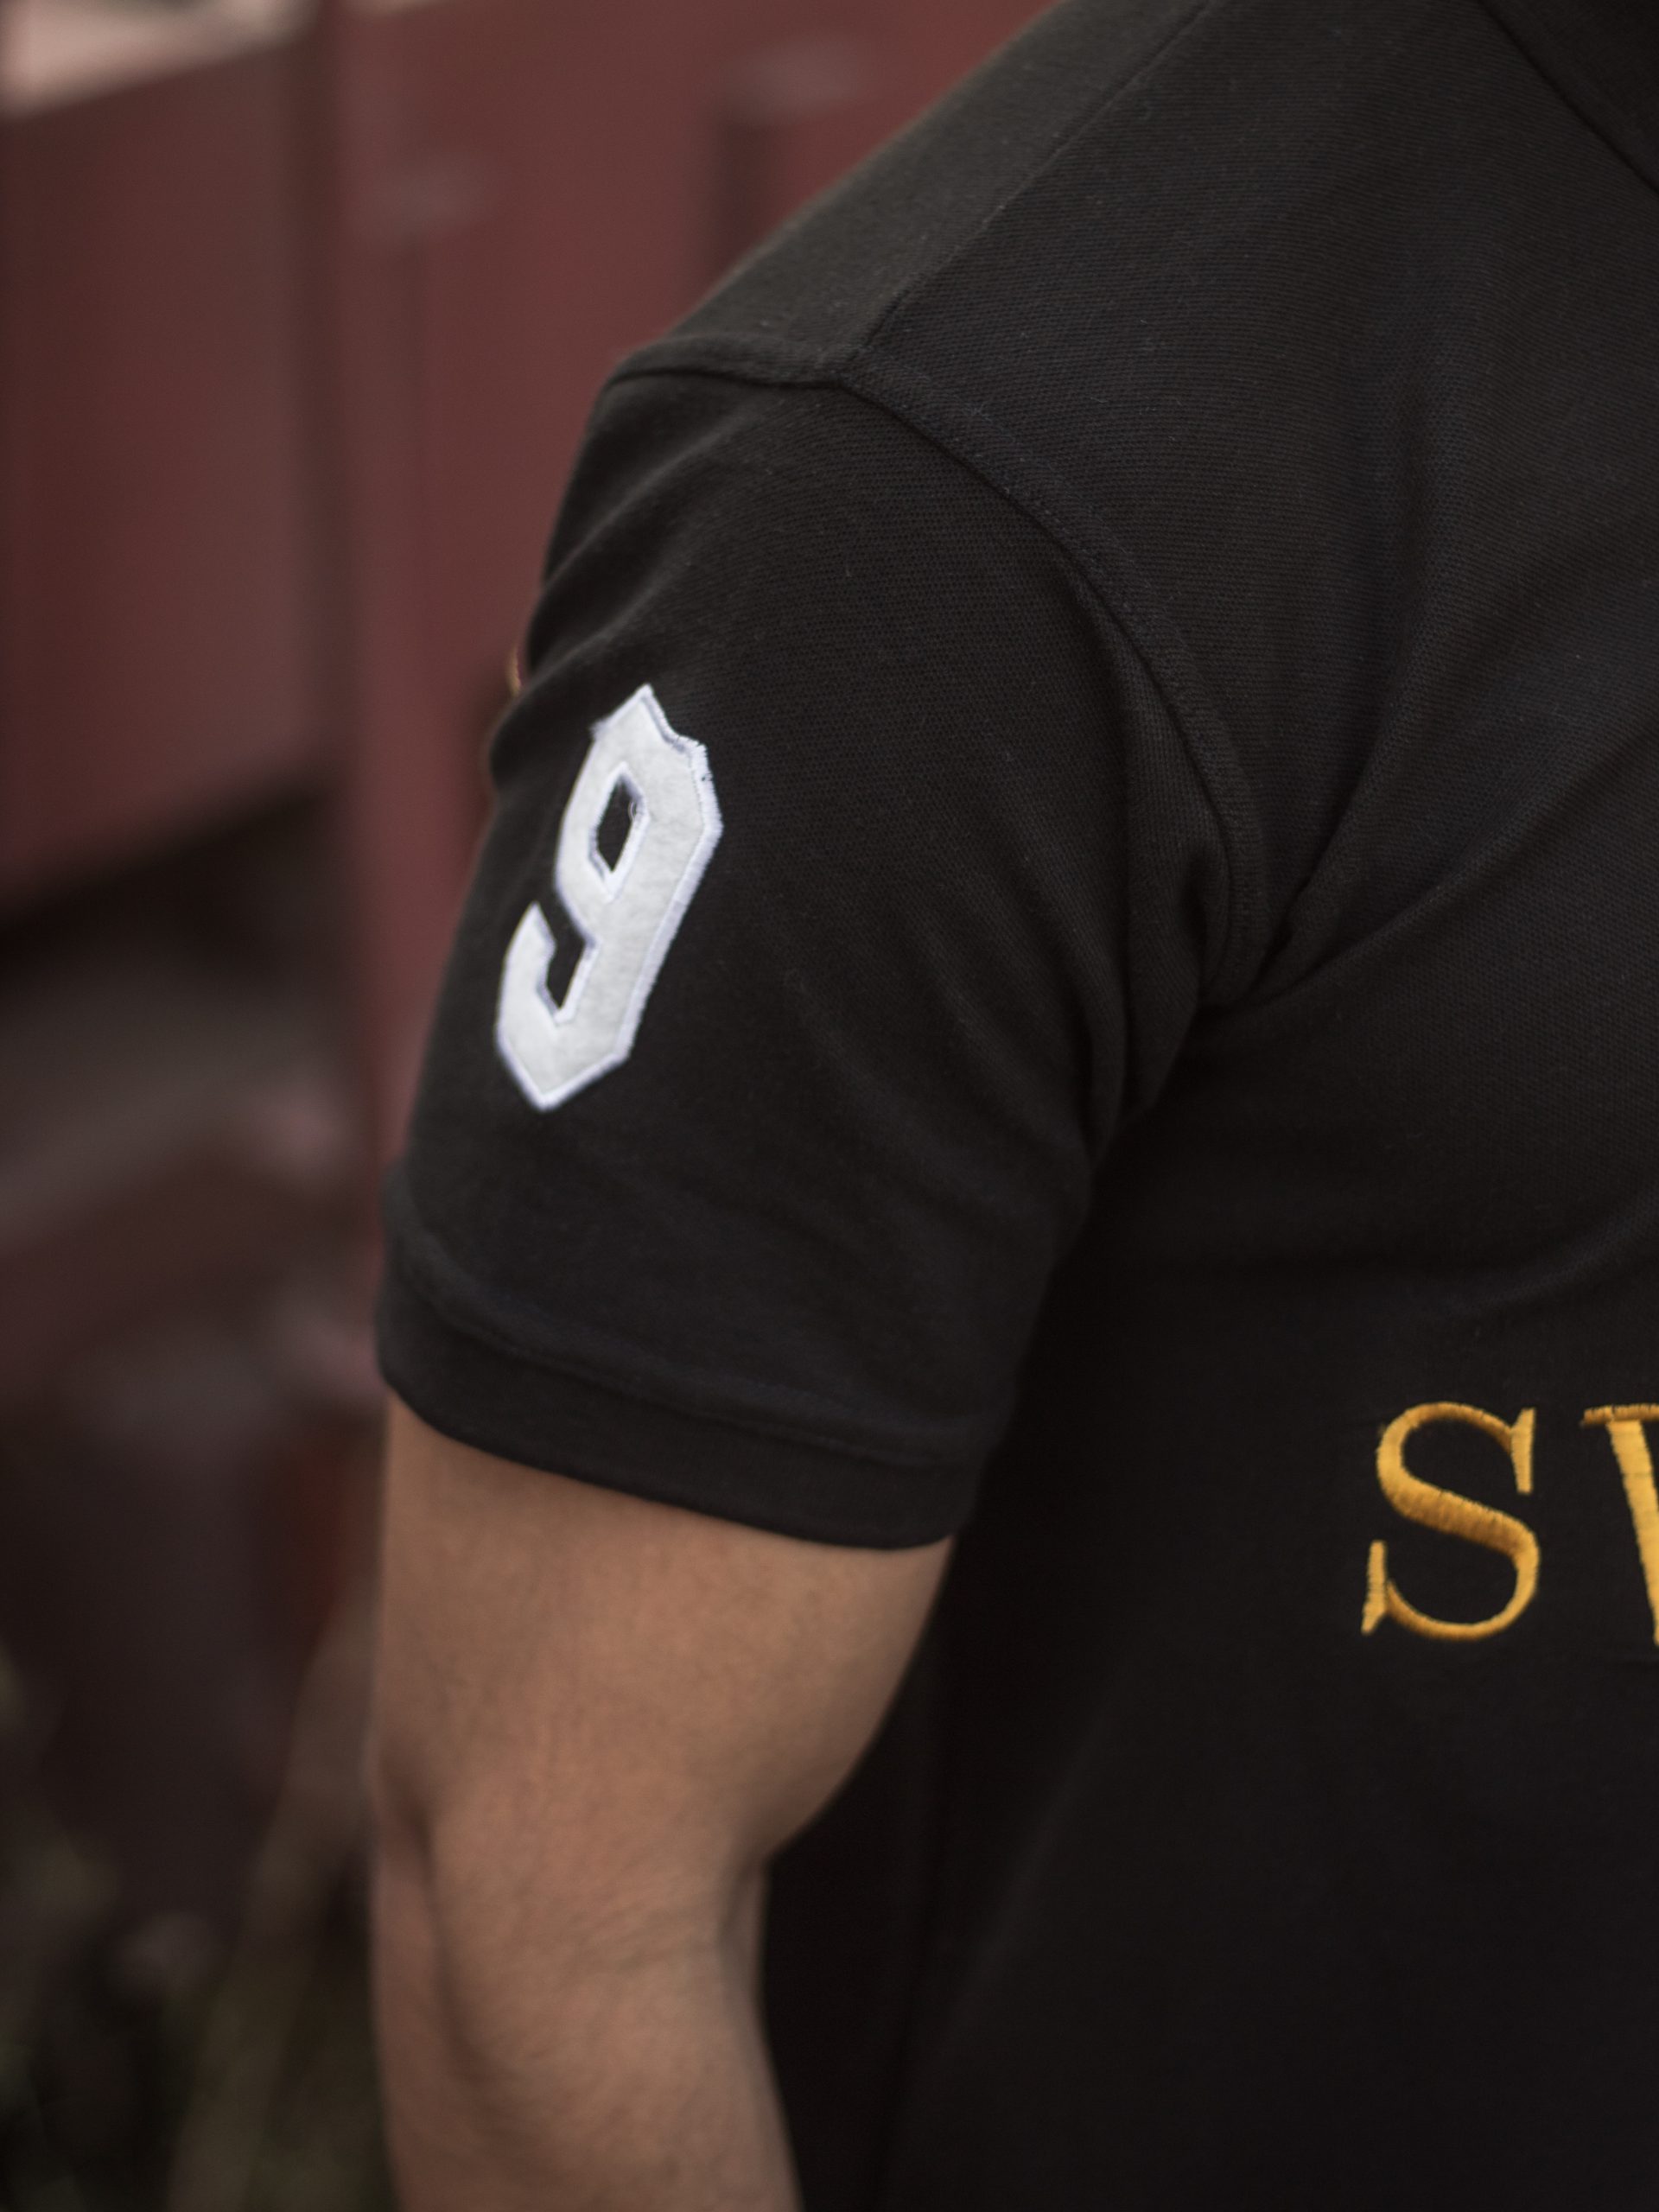 Dutch wear white panel black polo shirt – Swanky.pk